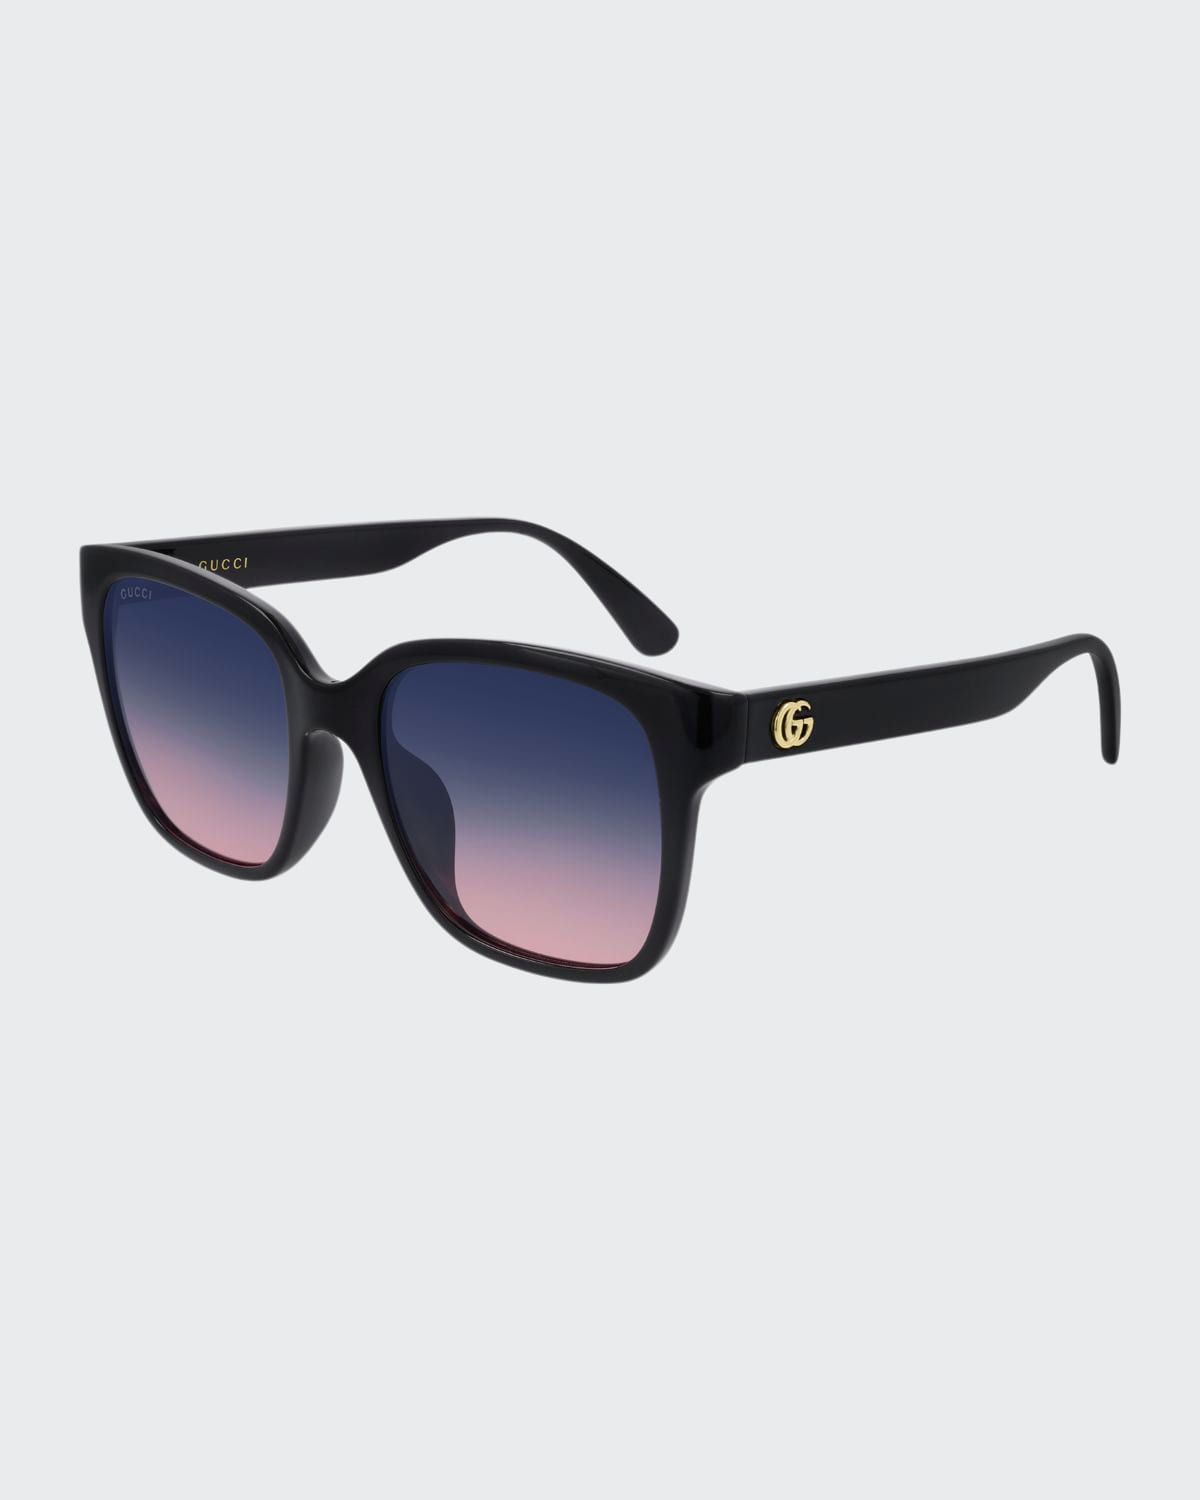 Gucci Square Gradient Sunglasses In Black Purple Pink